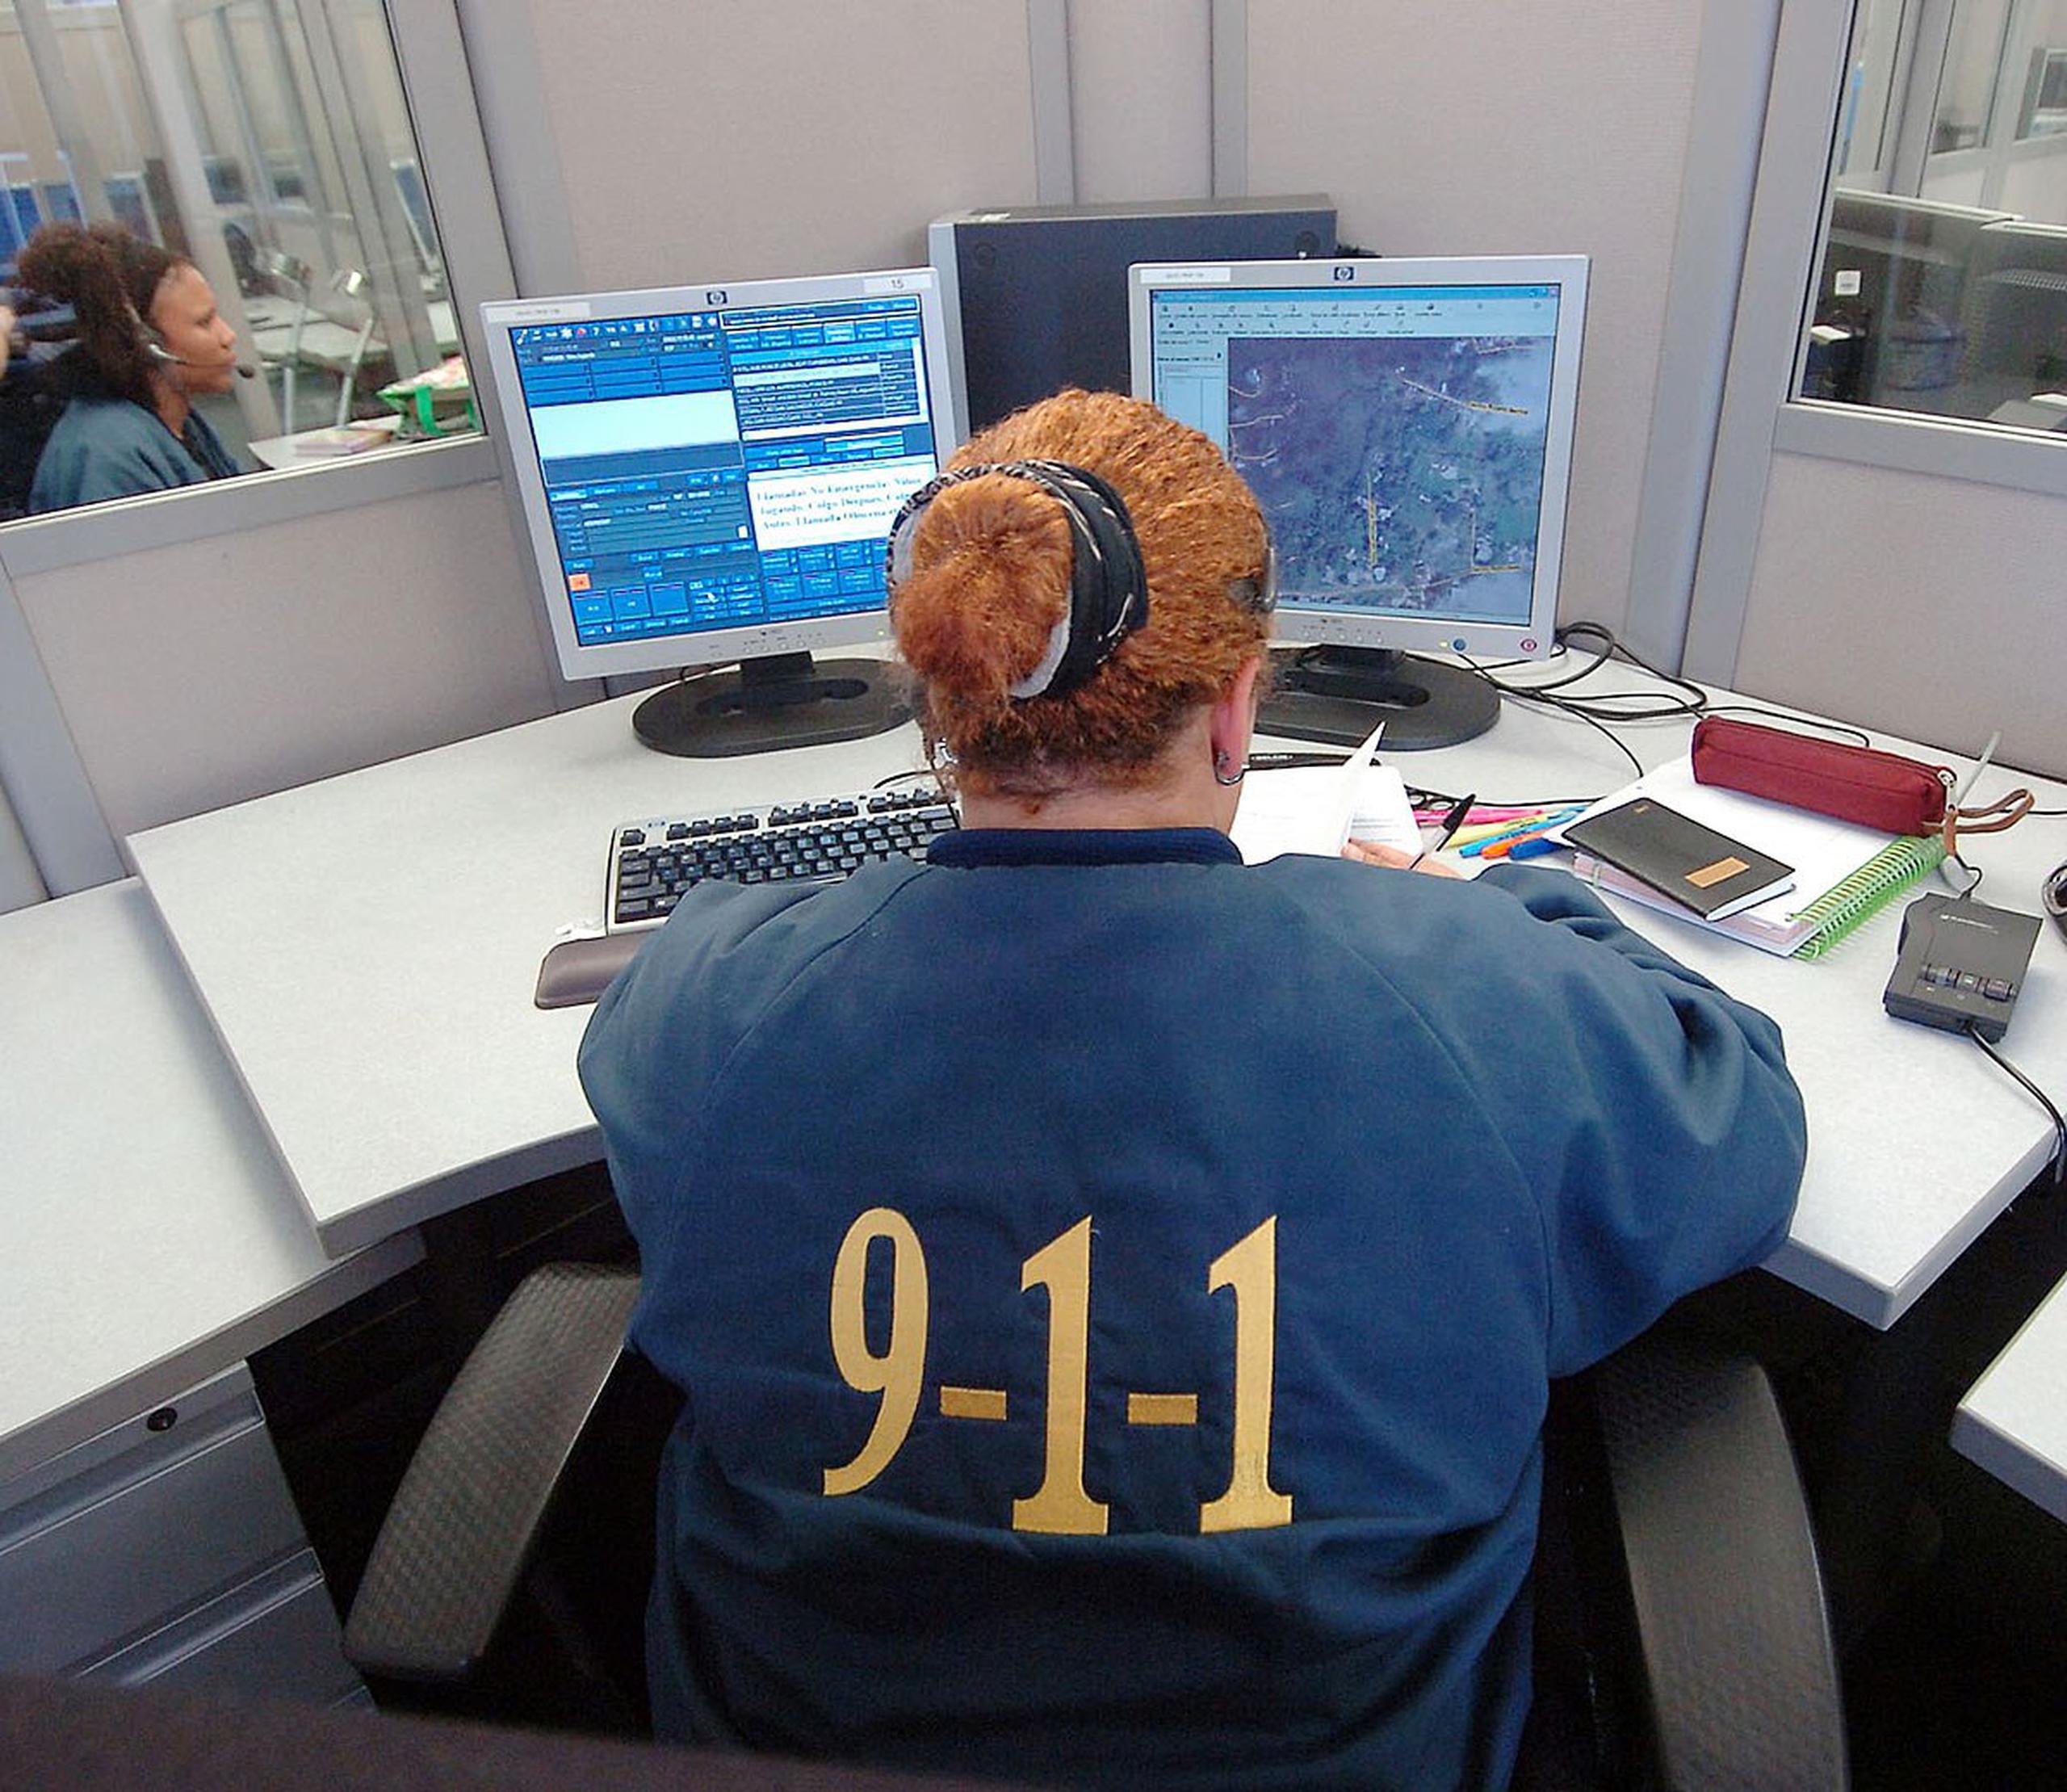 El “Text-to-911” comenzó a planificarse en Puerto Rico desde el 2011. (GFR Media)